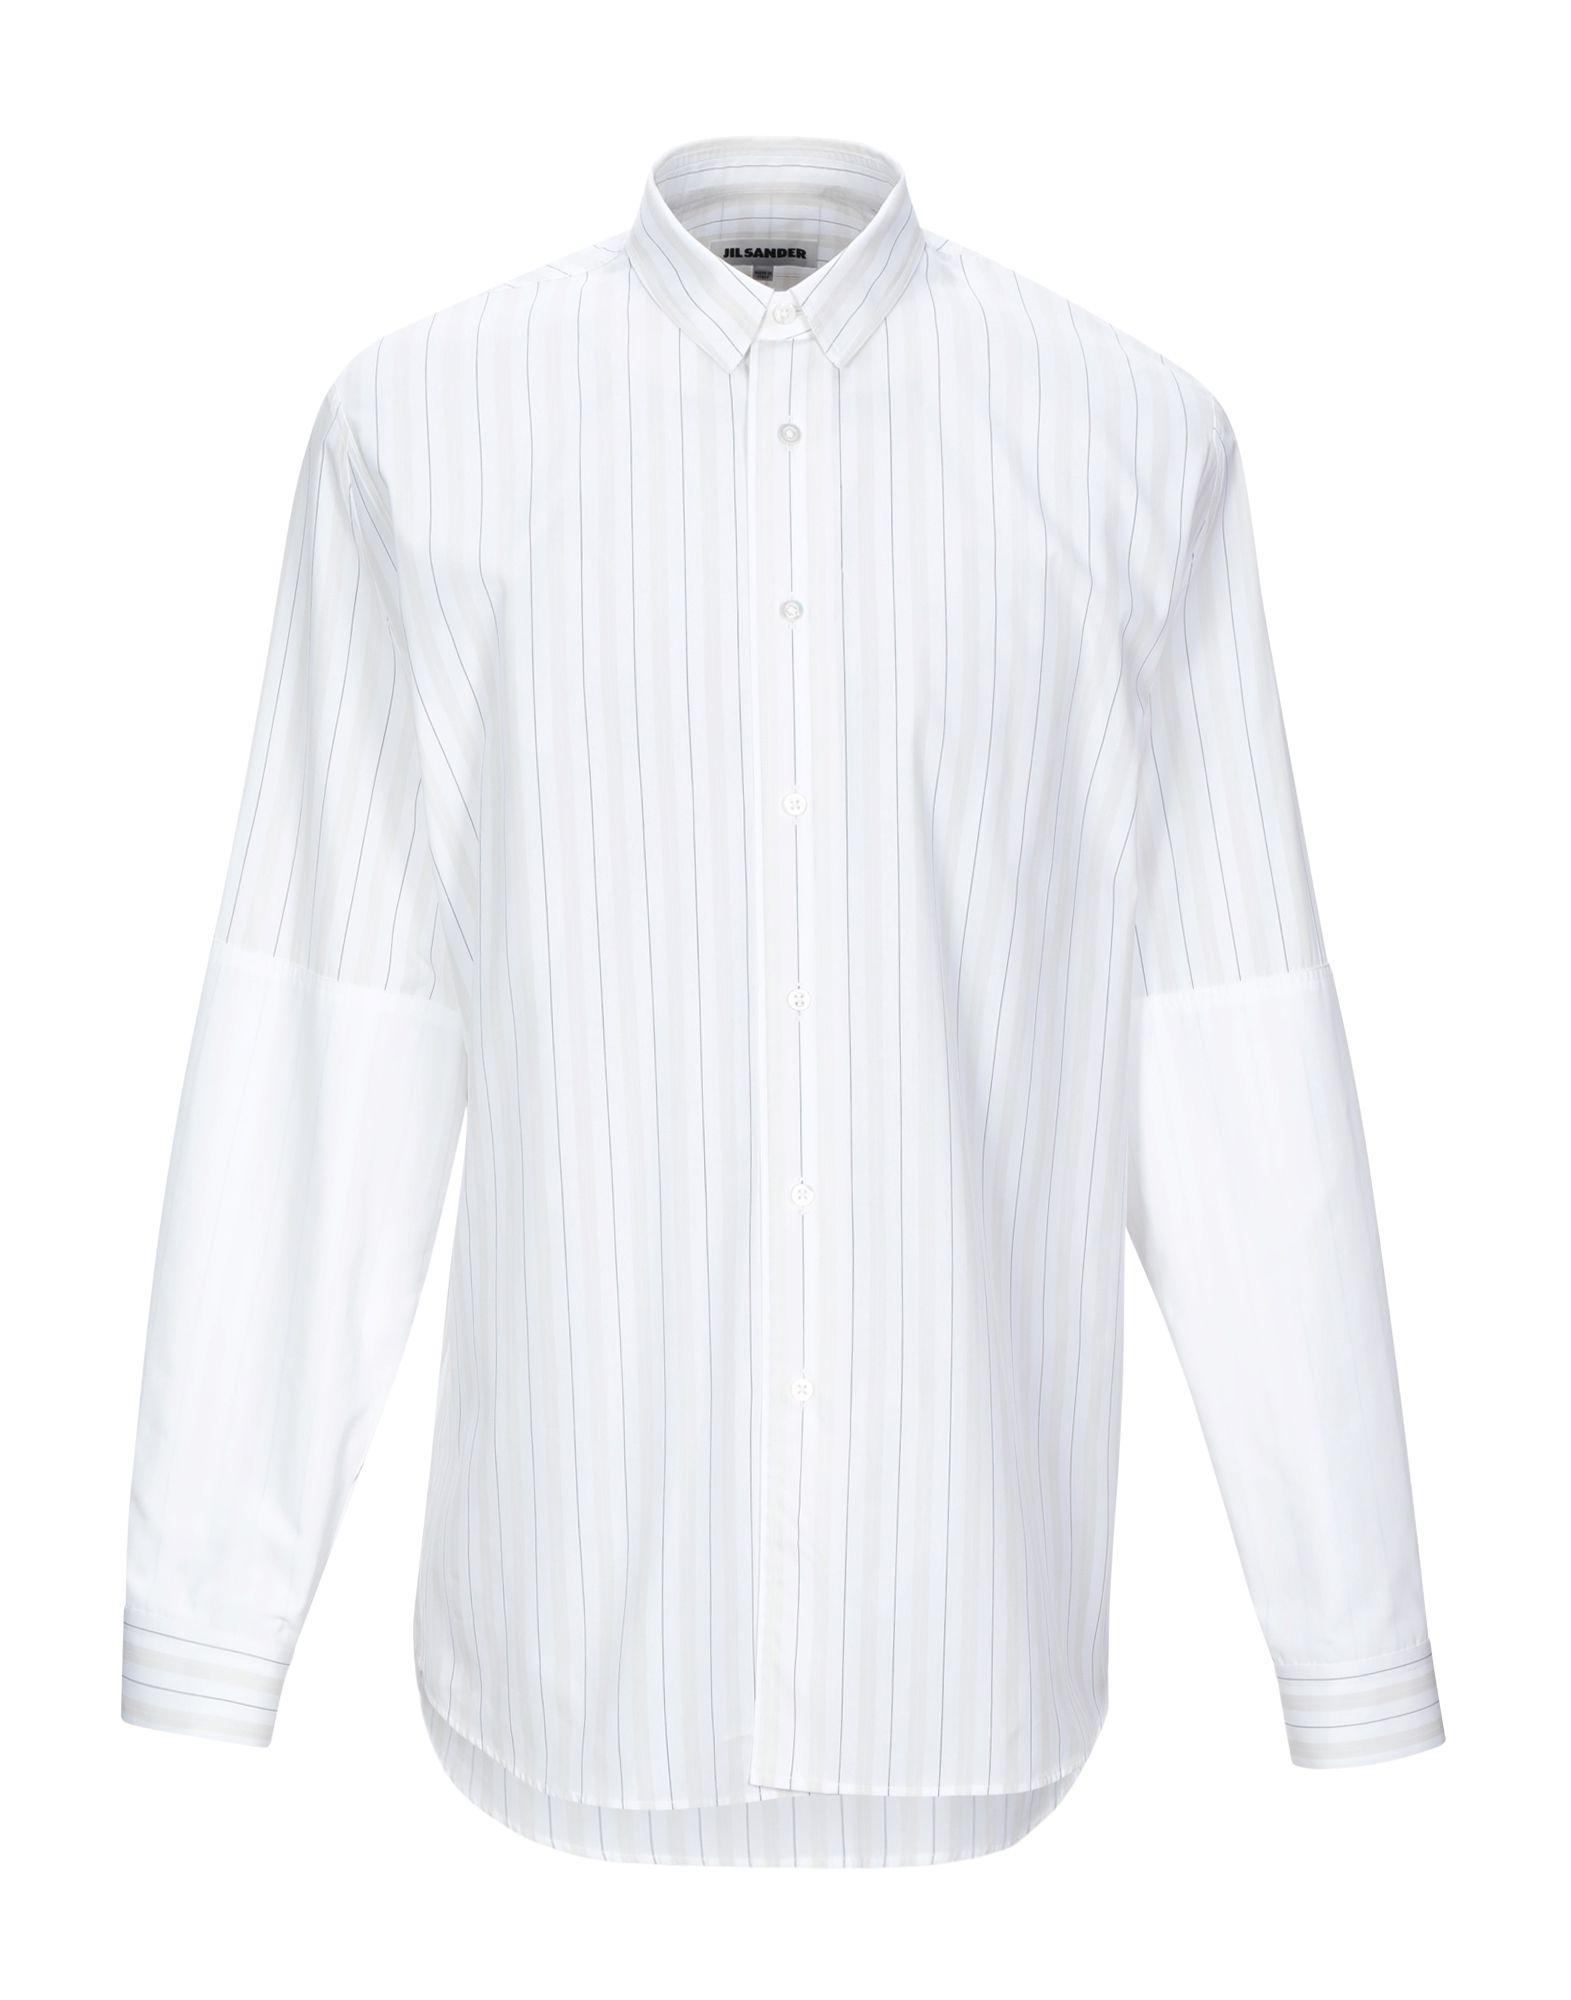 Jil Sander Cotton Shirt in White for Men - Lyst